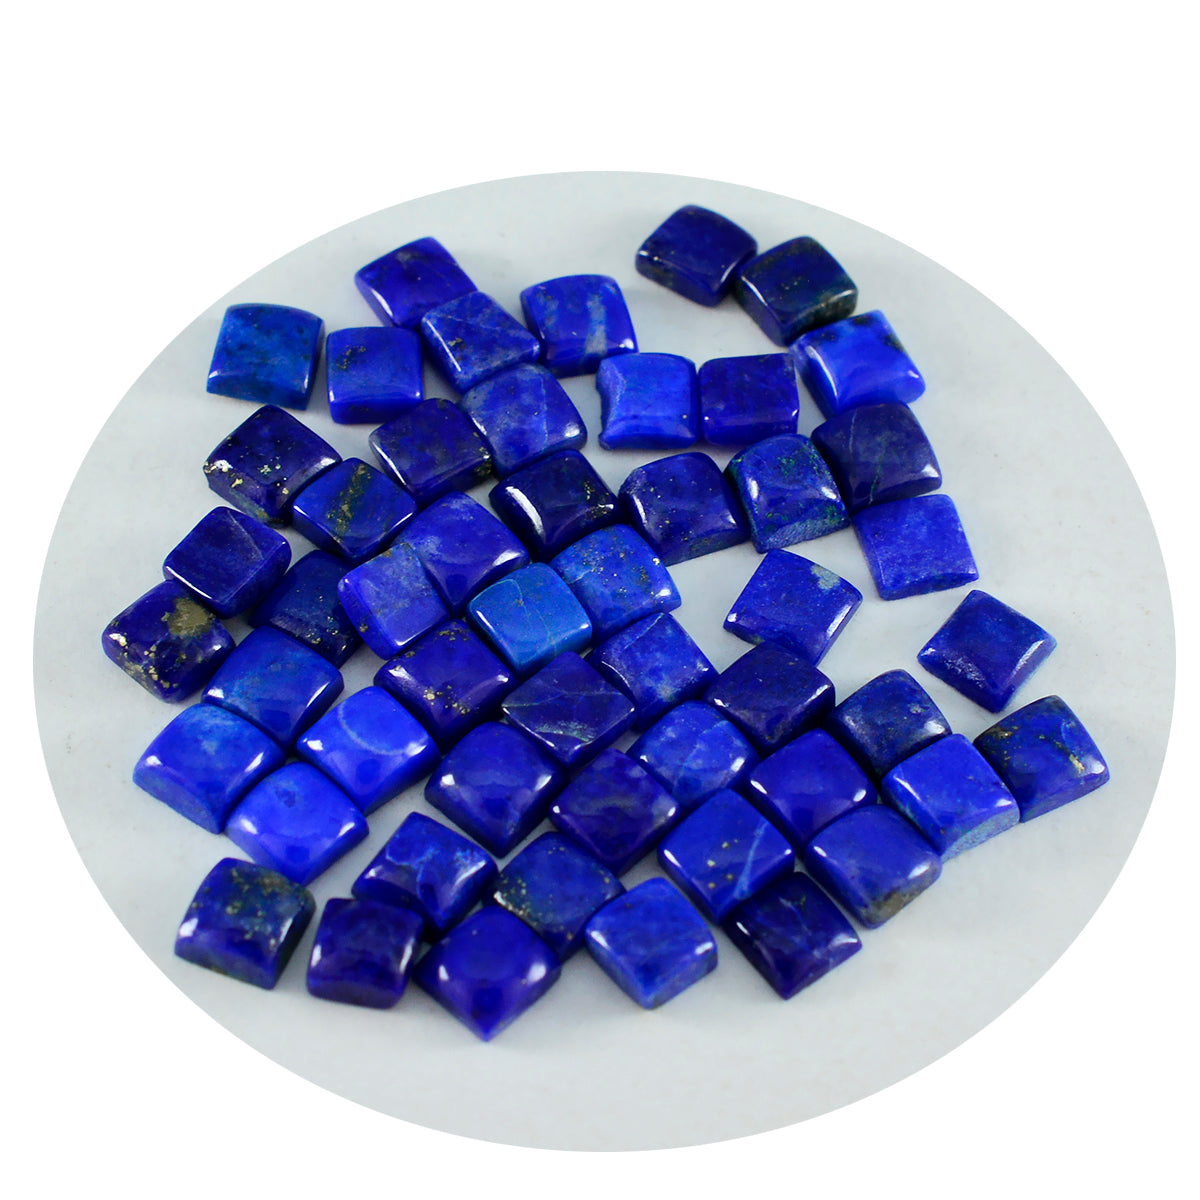 Riyogems 1 Stück blauer Lapislazuli-Cabochon, 5 x 5 mm, quadratische Form, Edelstein von hervorragender Qualität